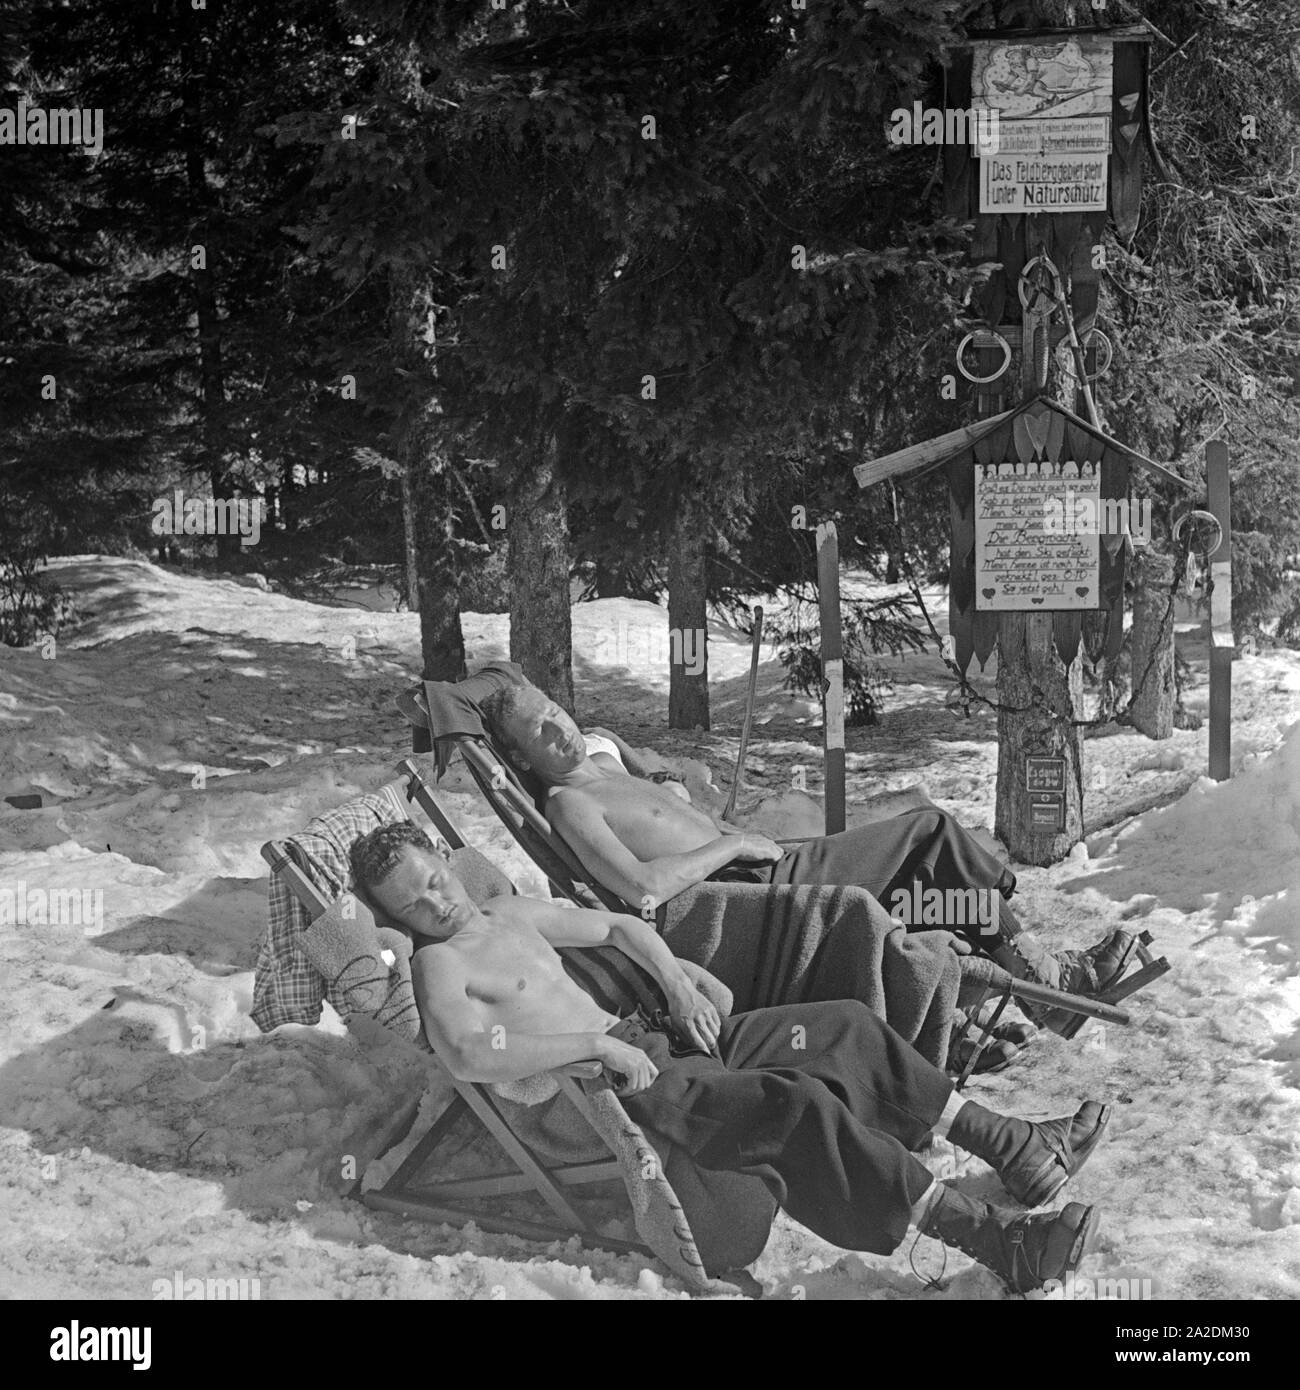 Skiläufer machen eine Pause und nehmen ein Sonnenbad, Deutschland 1930er Jahre. Ski tourists tanning while having a break, Germany 1930s. Stock Photo